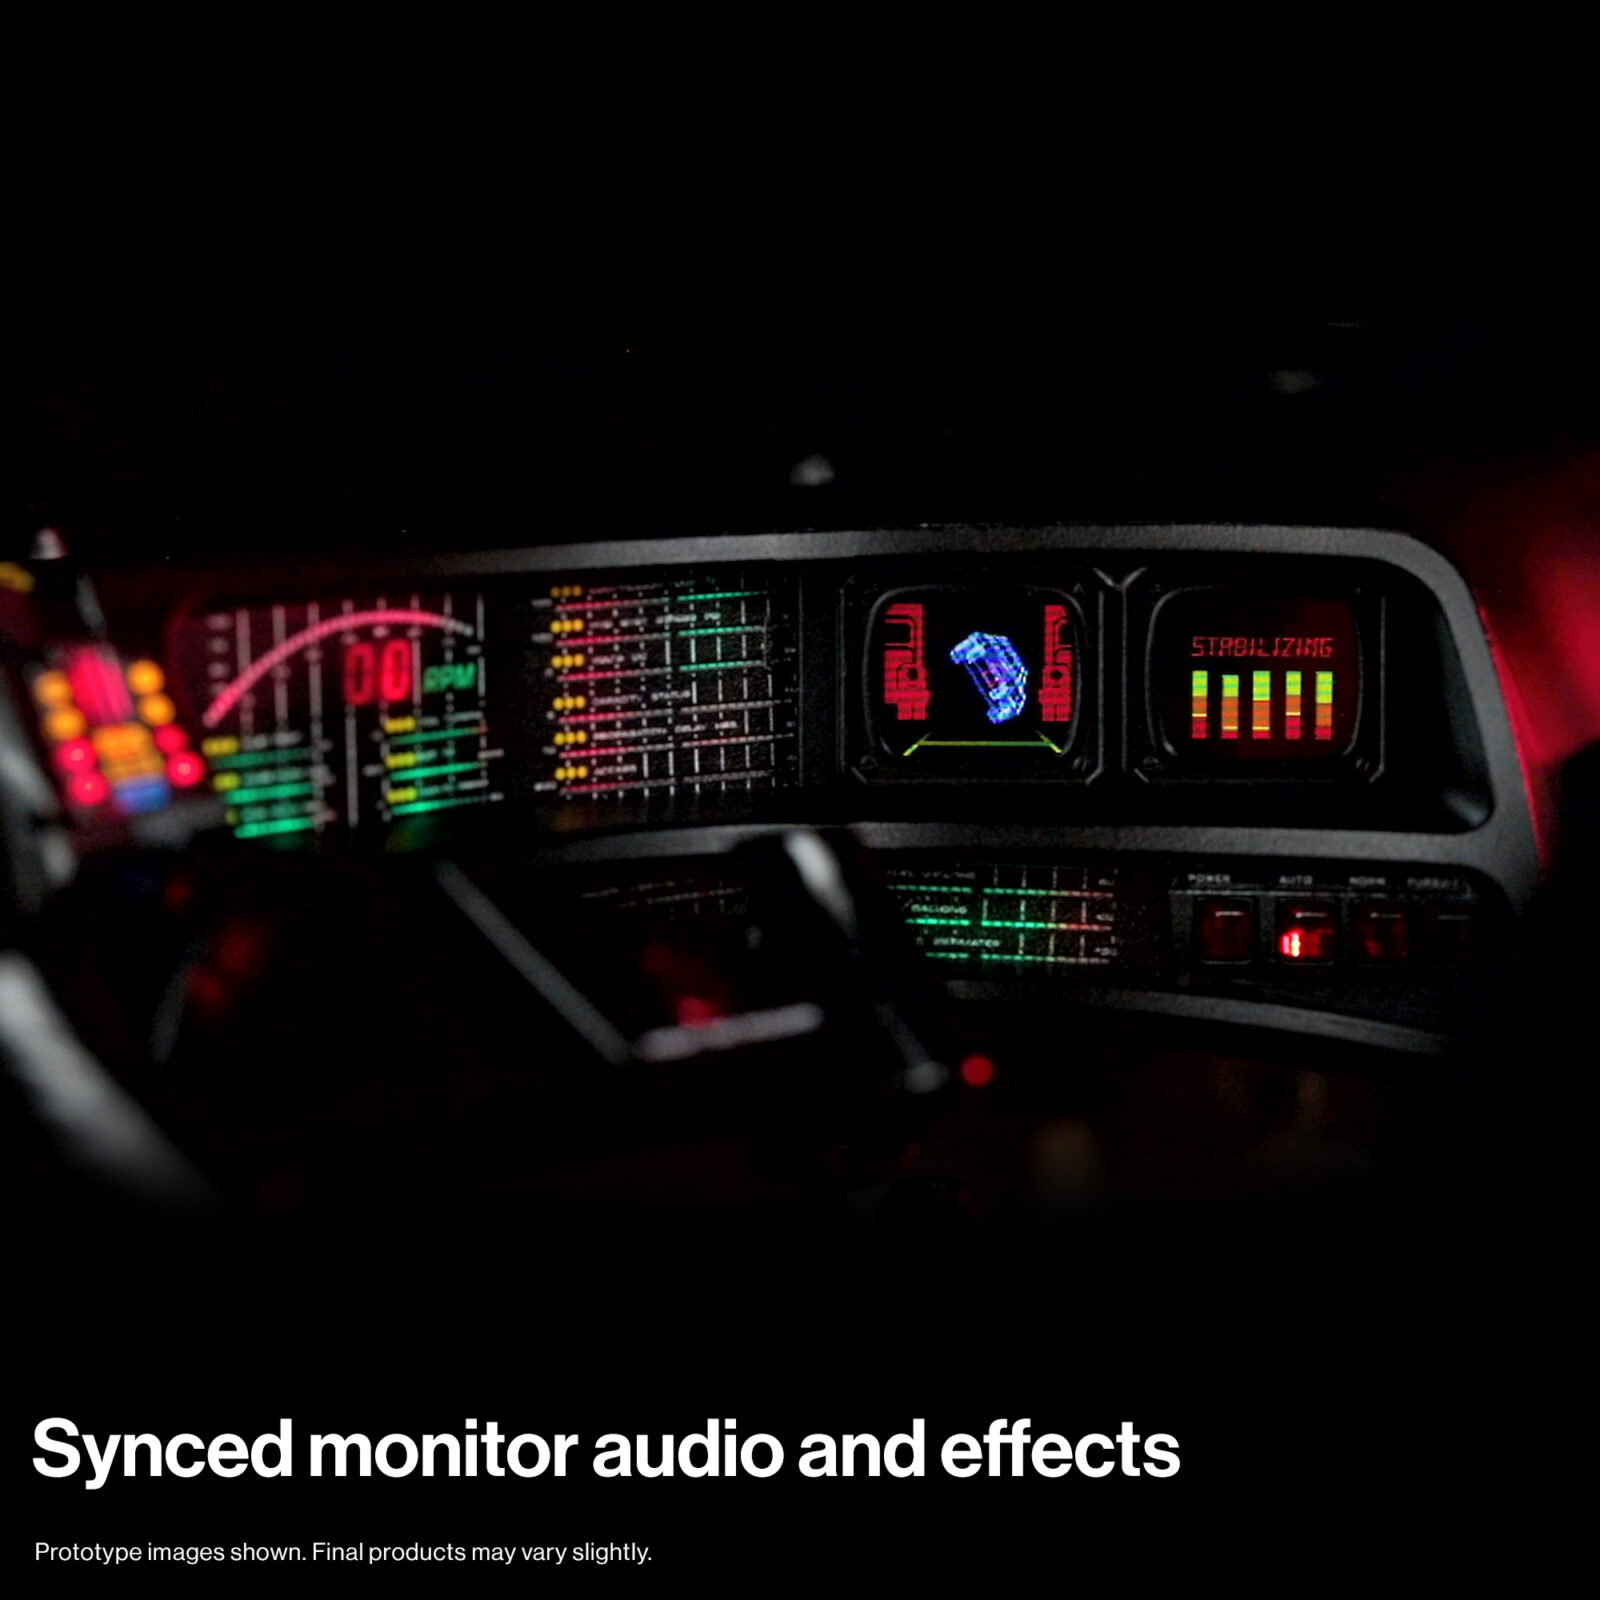 Áudio e efeitos de monitor sincronizados no painel do KITT